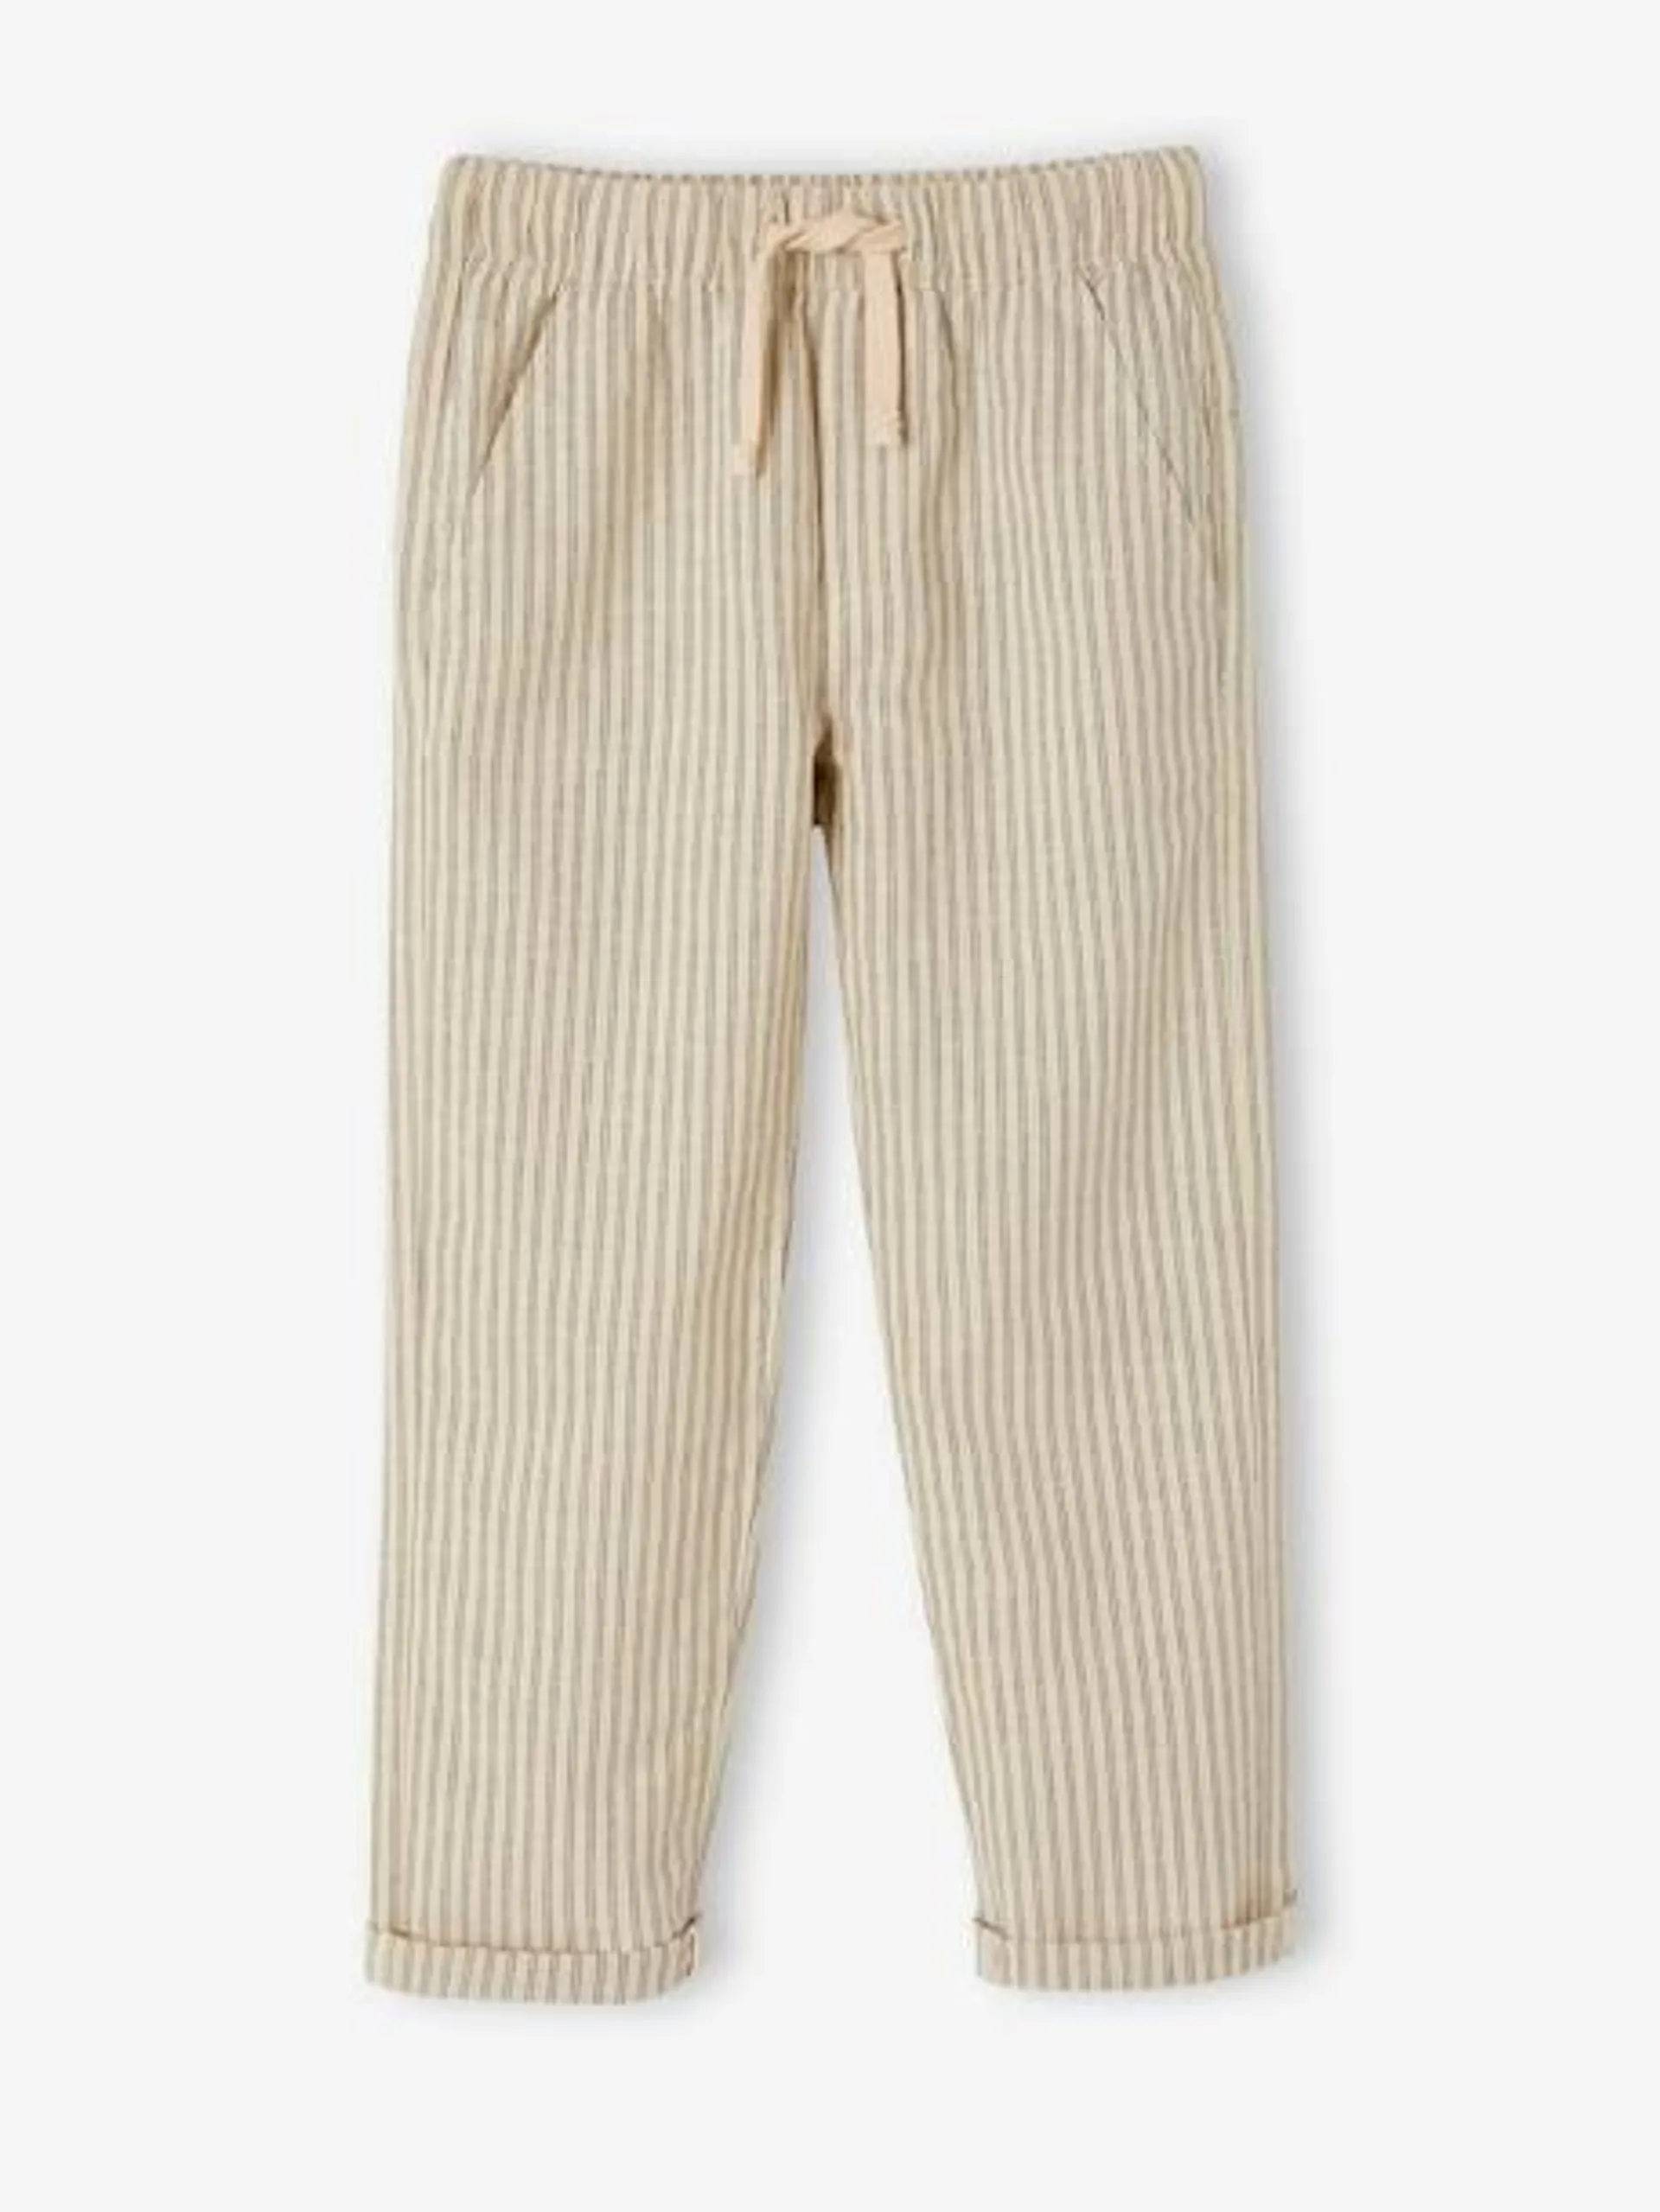 Pantalon rayé forme loose garçon coton/lin - rayé beige